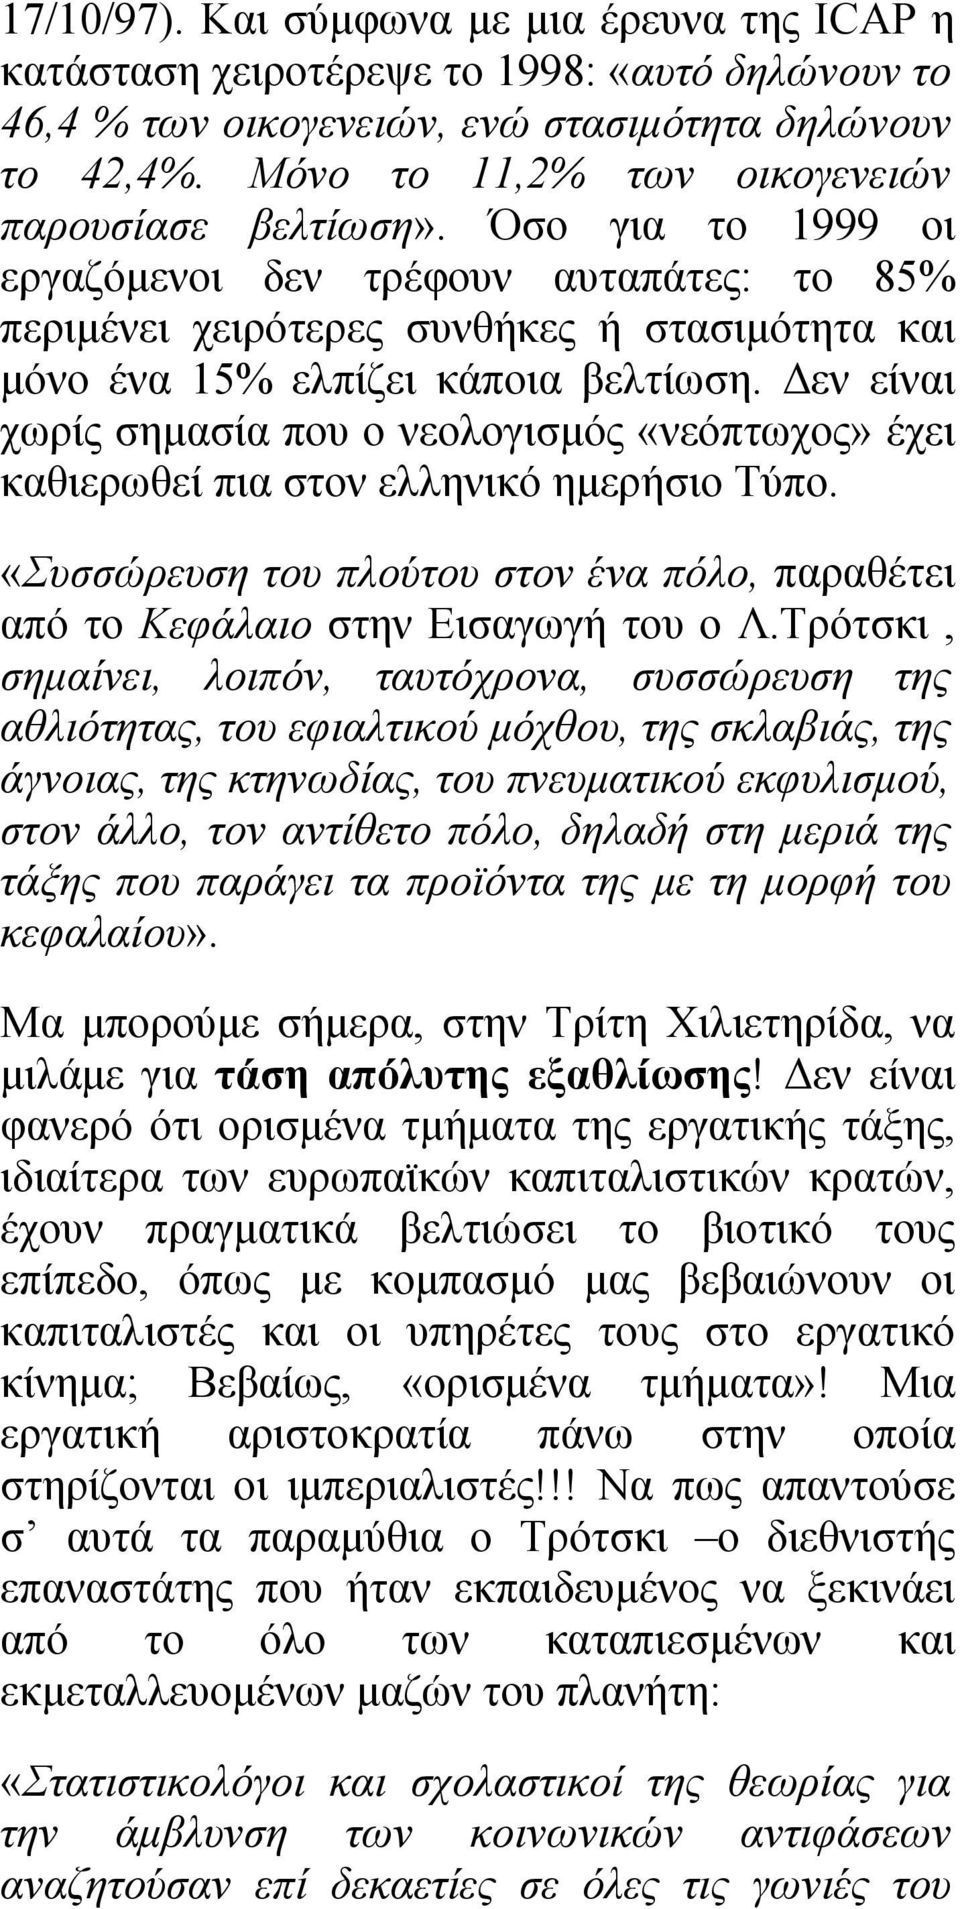 Δεν είναι χωρίς σημασία που ο νεολογισμός «νεόπτωχος» έχει καθιερωθεί πια στον ελληνικό ημερήσιο Τύπο. «Συσσώρευση του πλούτου στον ένα πόλο, παραθέτει από το Κεφάλαιο στην Εισαγωγή του ο Λ.